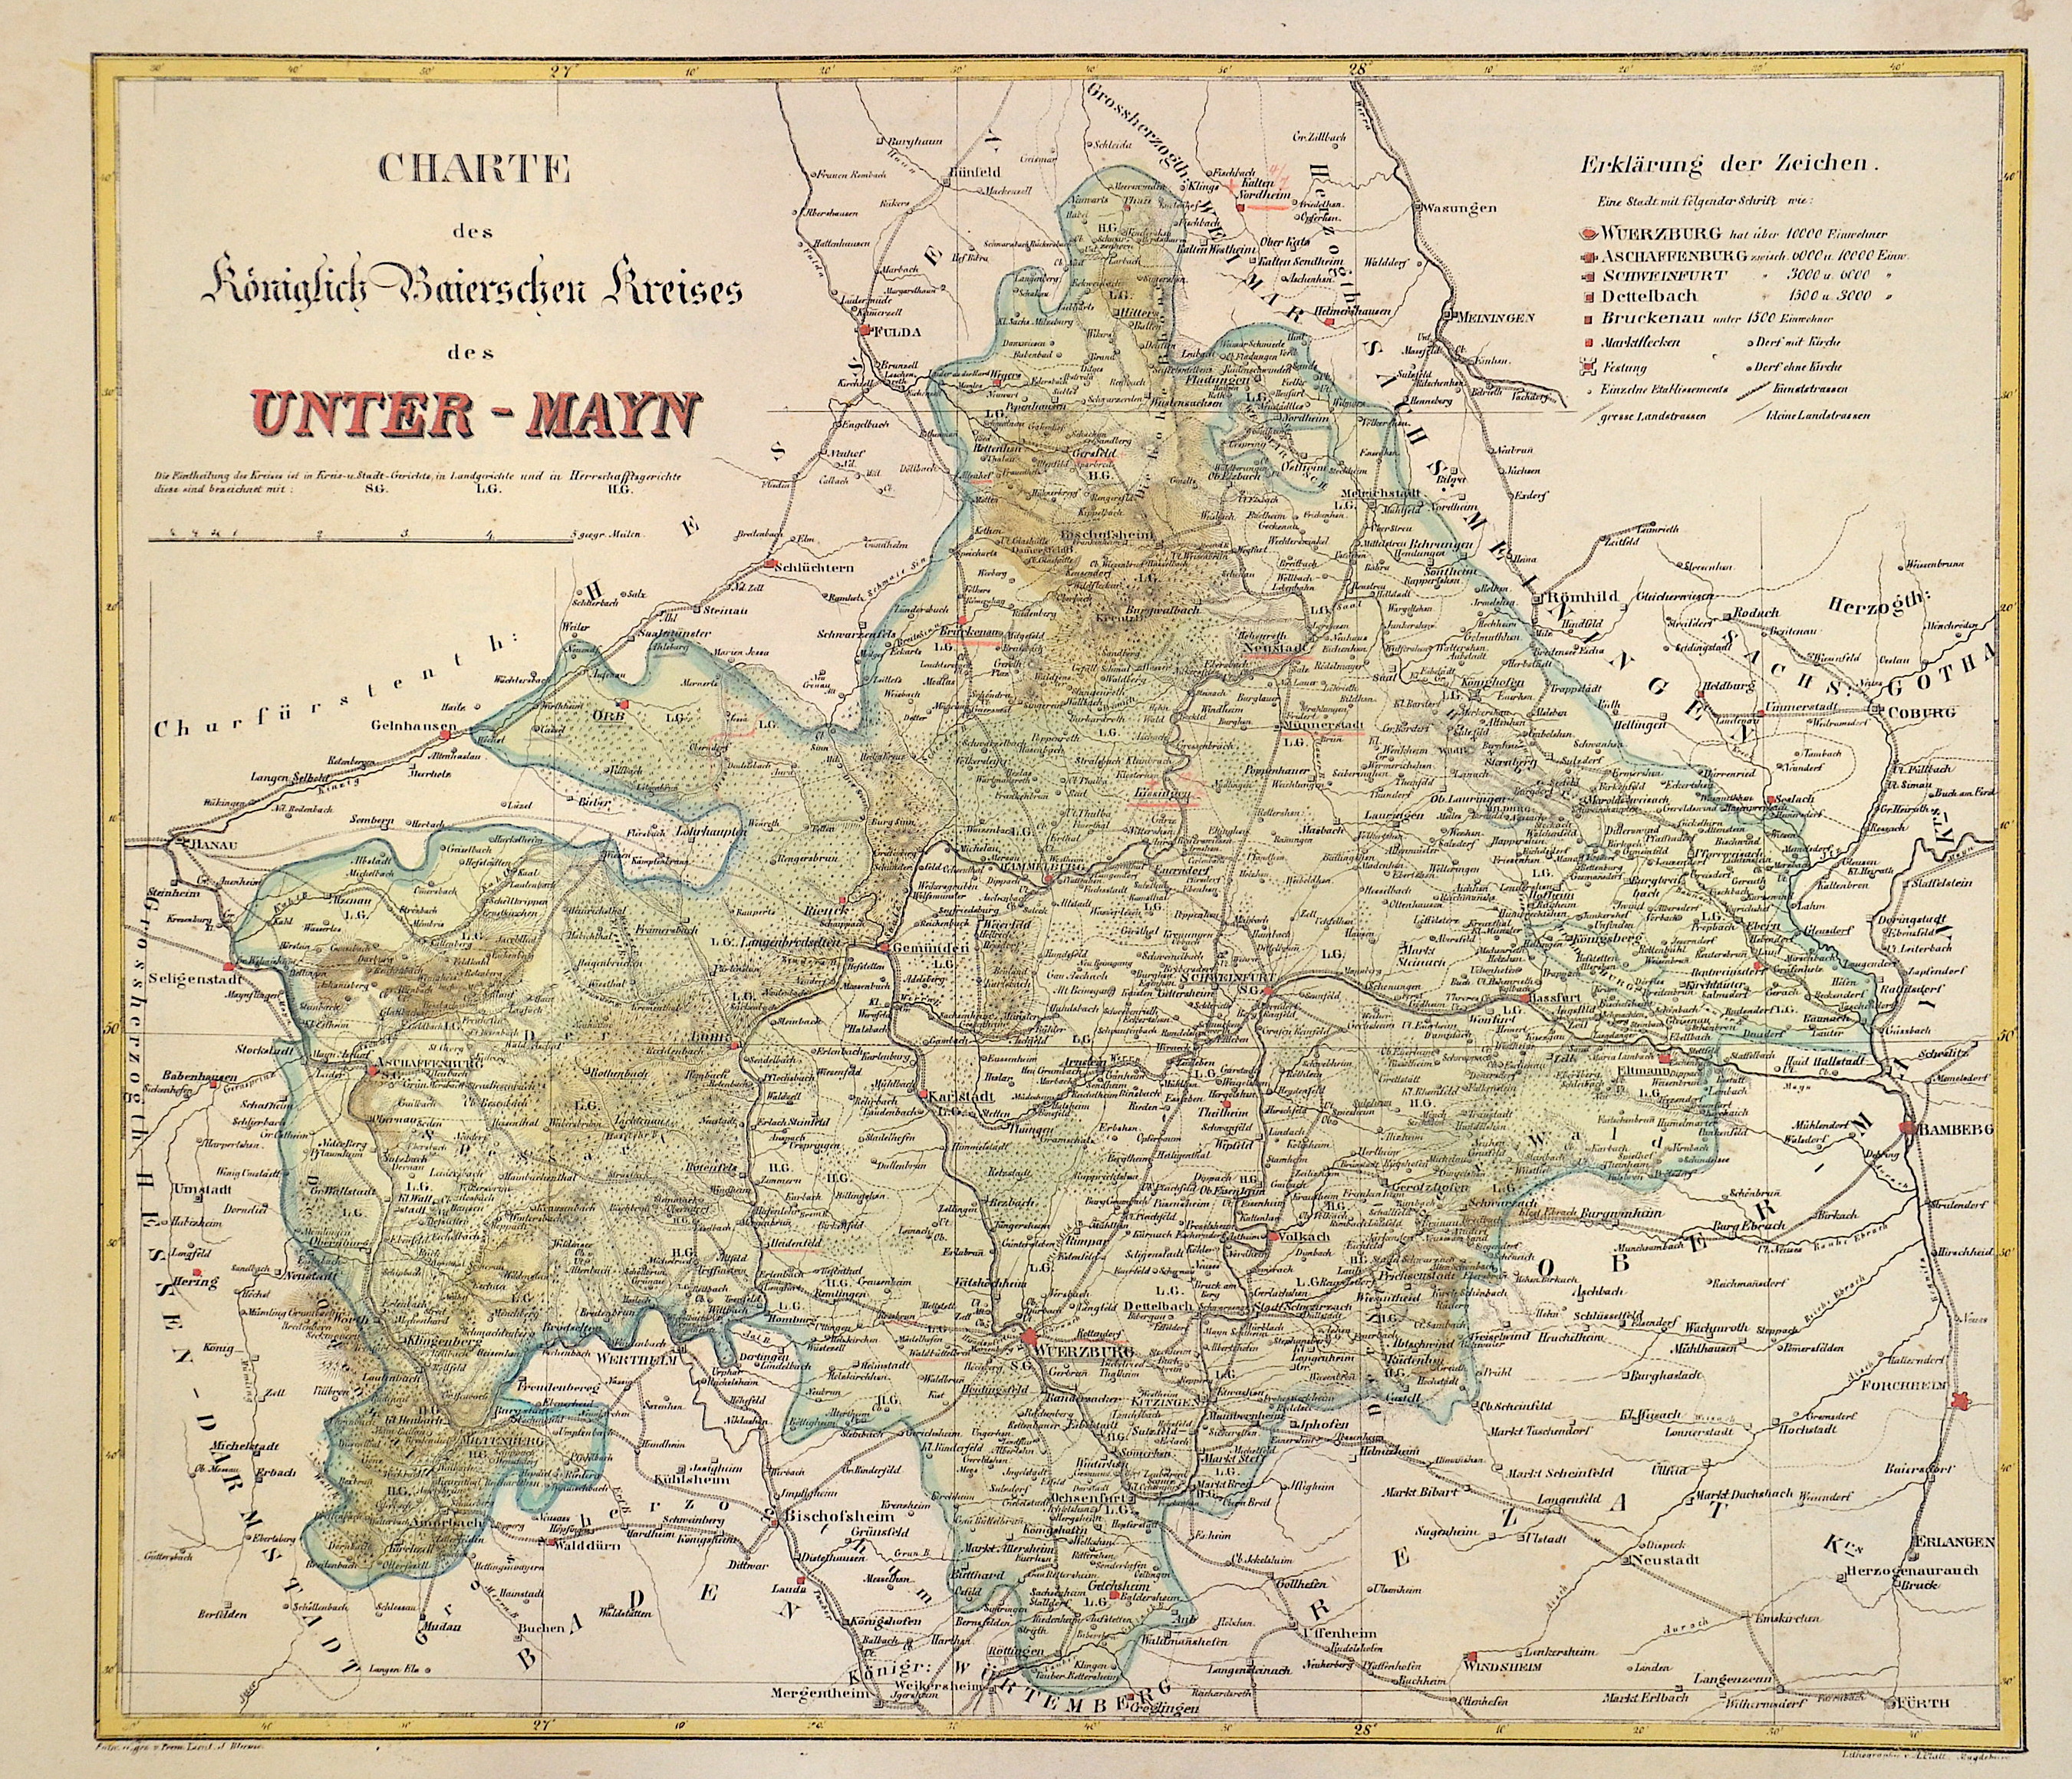 Platt A. Charte des Königlich Baierschen Kreises des Unter-Mayn